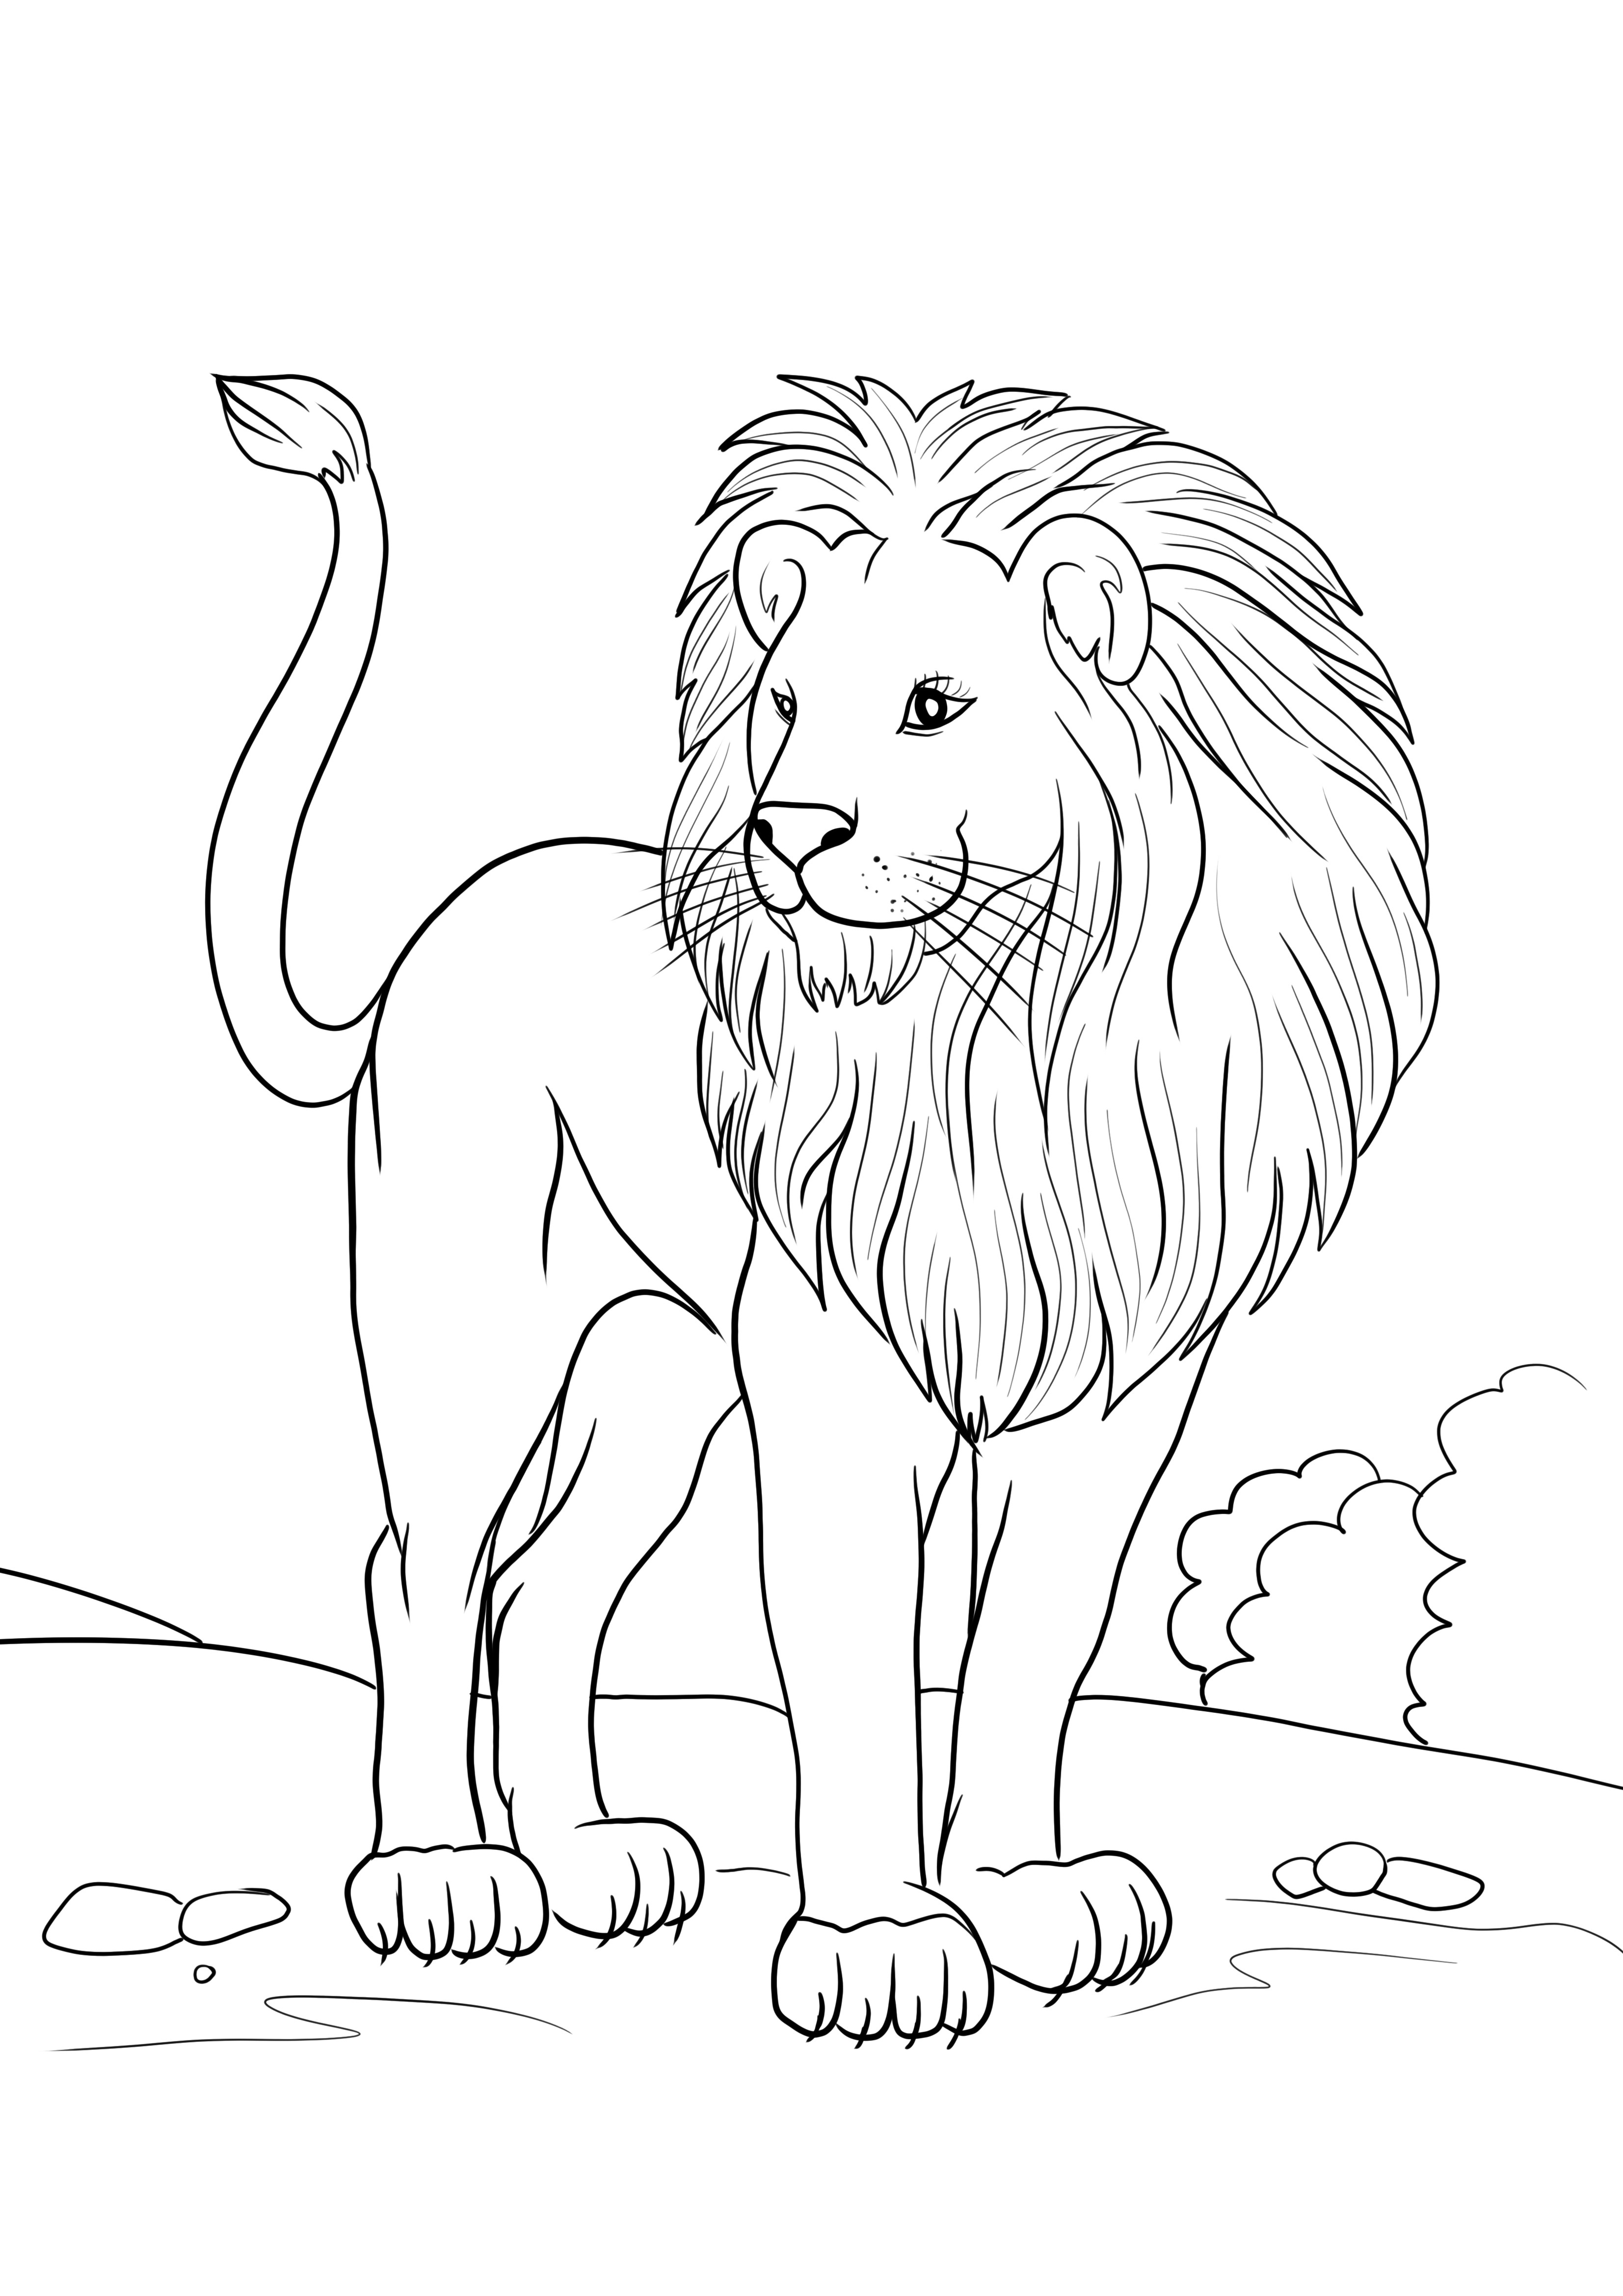 Afrikaanse leeuw om pagina gratis af te drukken of te downloaden kleurplaat